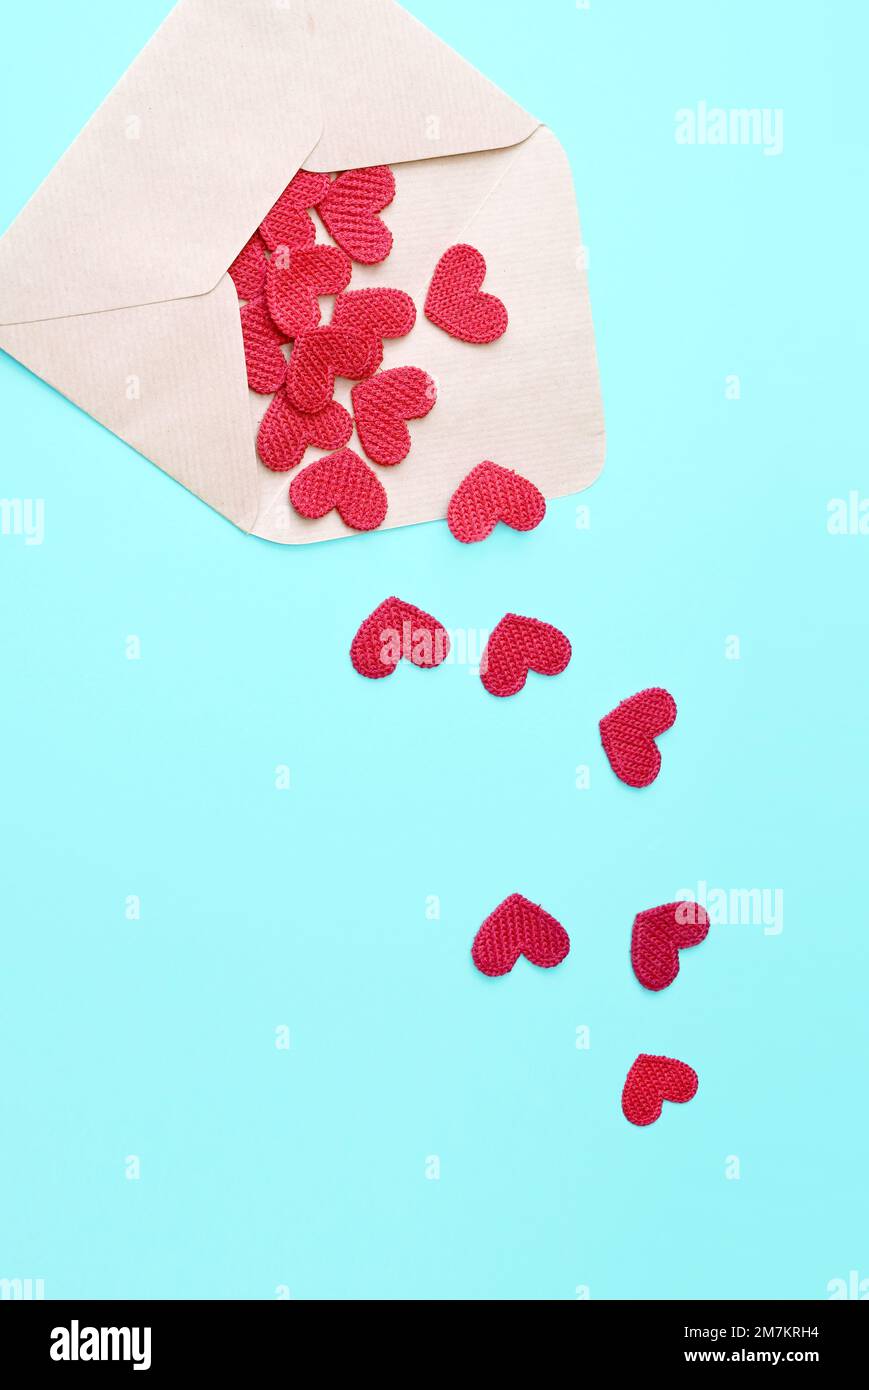 Enveloppe et coeurs roses sur fond bleu. Concept de Saint-Valentin, amour, anniversaire. Banque D'Images